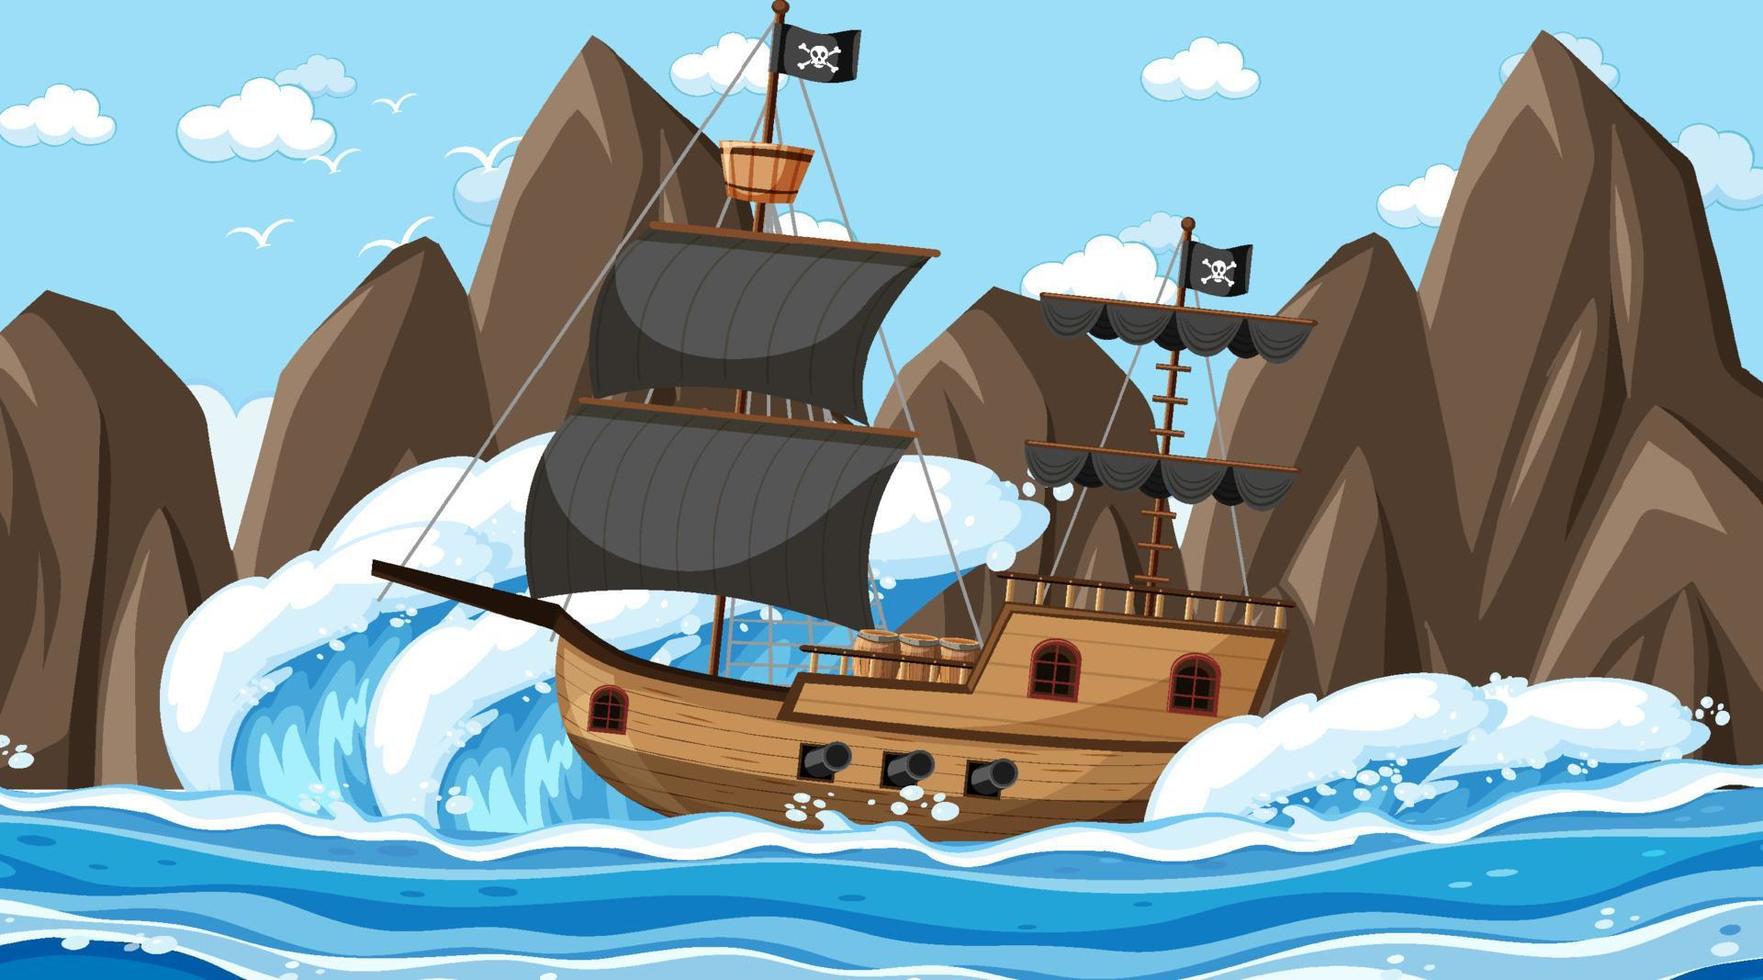 océan avec bateau pirate à la scène de jour en style cartoon vecteur